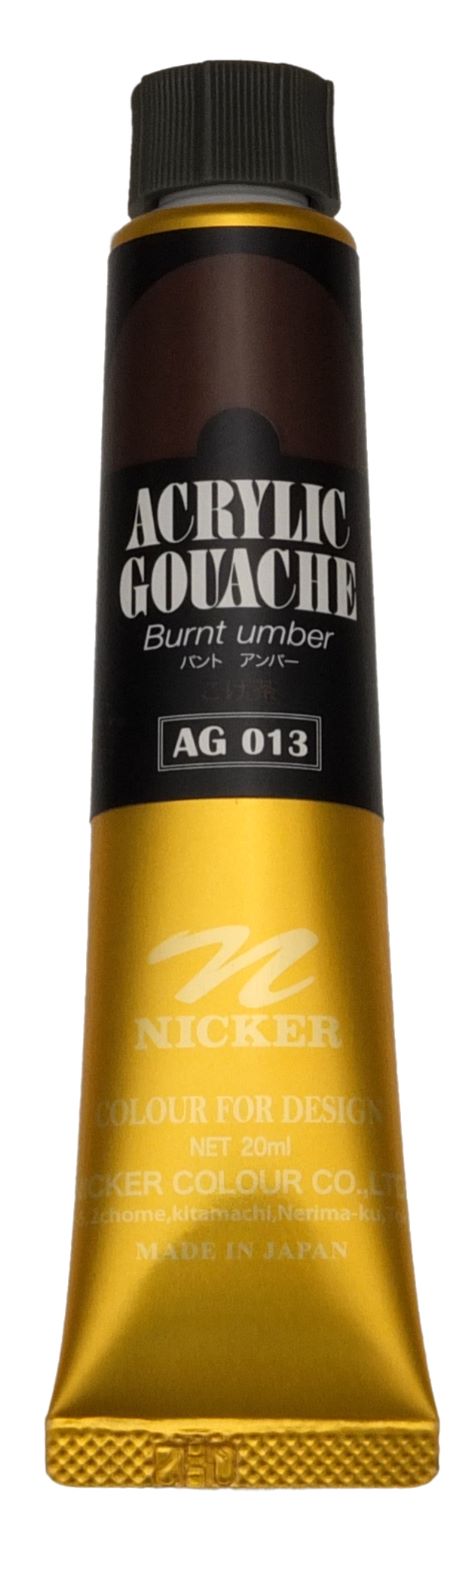 ACRYLIC GOUACHE 20ml　AG013 BURNT UMBER